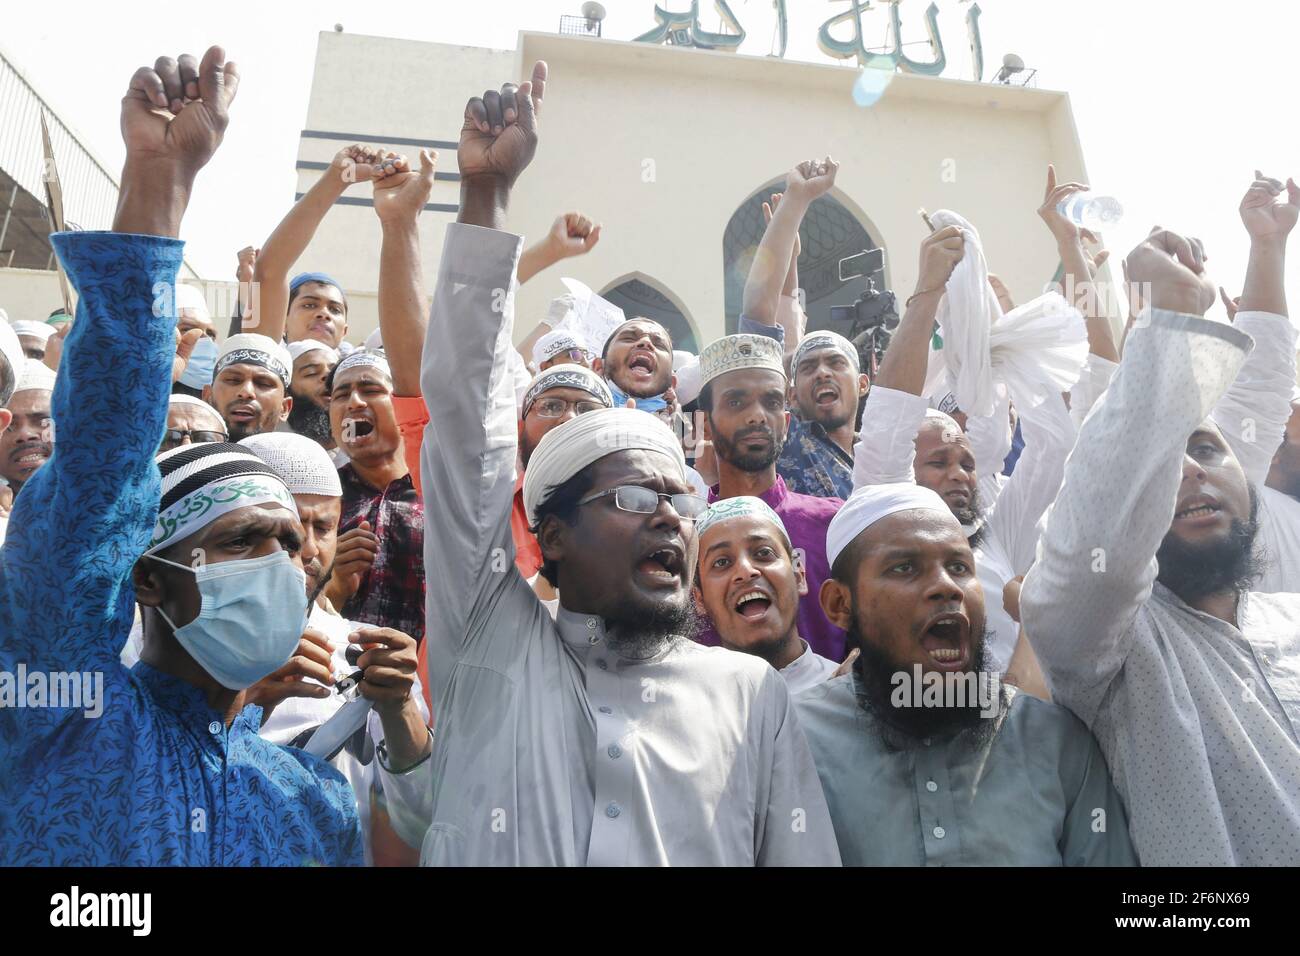 Les partisans de Hefajat-e-Islam Bangladesh ont crié leur slogan alors qu'ils se réunissent dans une manifestation devant la mosquée nationale Baitul Mukarram pour protester contre la mort de ses militants lors d'affrontements avec des agents de police pendant trois jours, à Dhaka, au Bangladesh, le 2 avril 2021. Photo de Kanti Das Suvra/ABACAPRESS.COM Banque D'Images